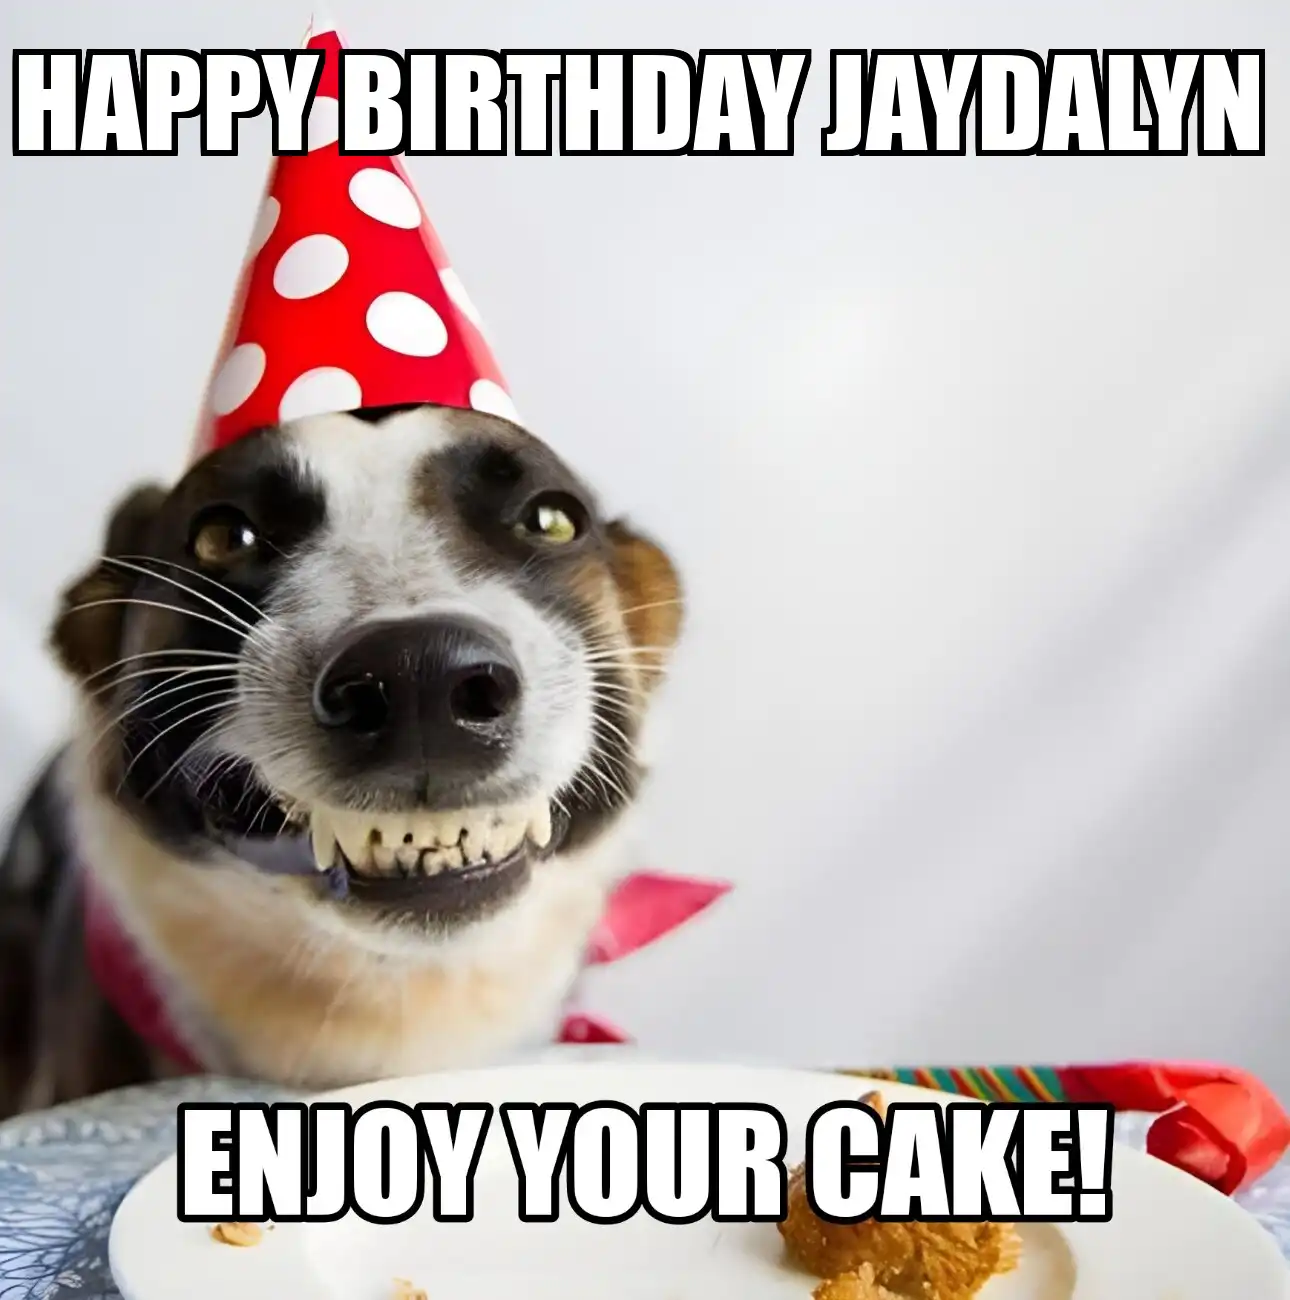 Happy Birthday Jaydalyn Enjoy Your Cake Dog Meme